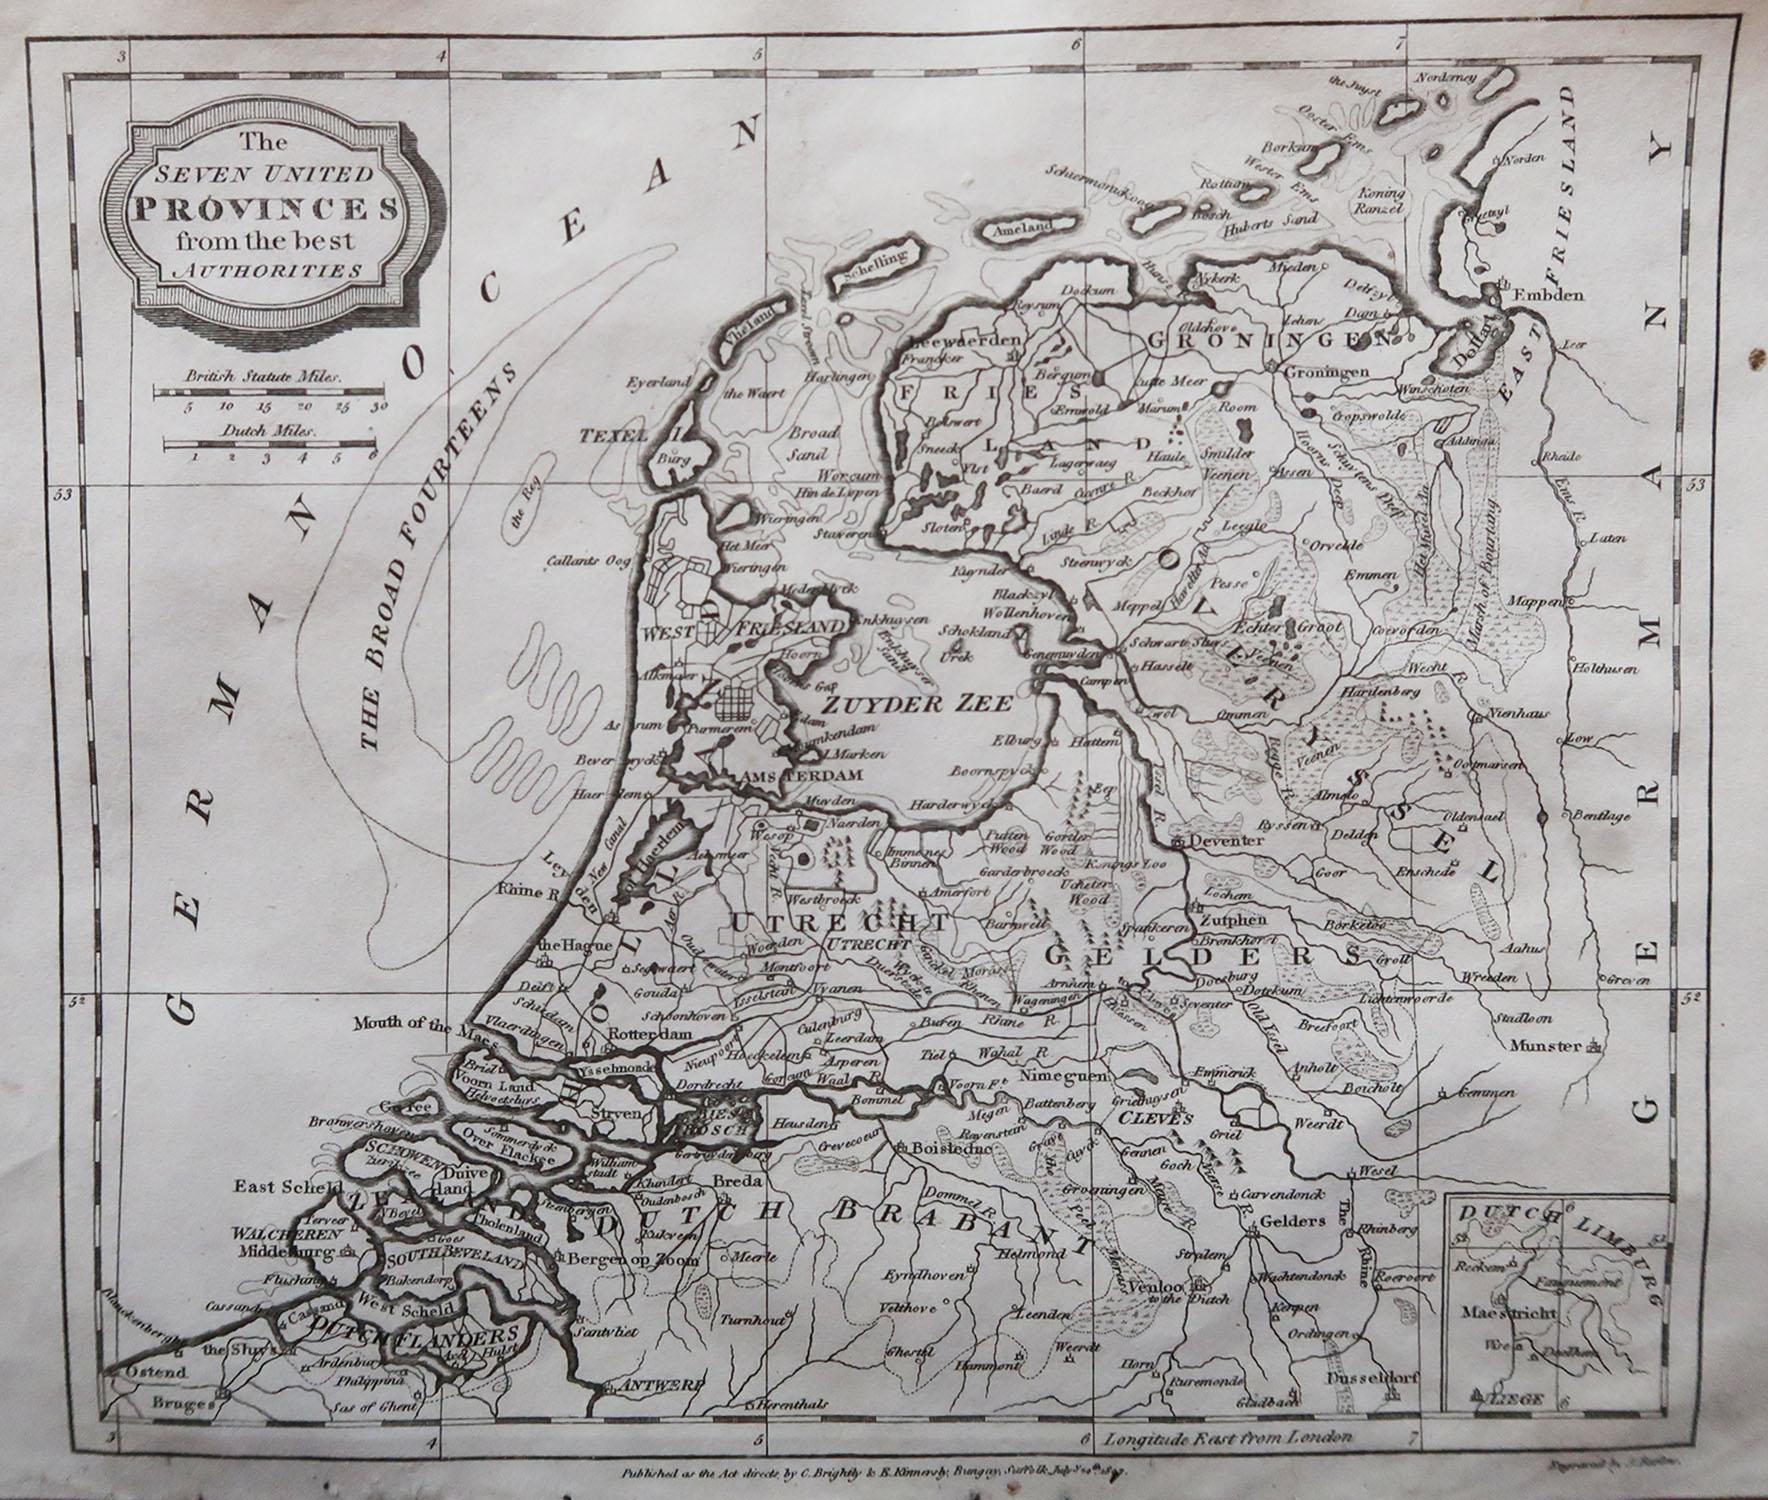 Große Karte der Niederlande

Kupferstich von Barlow

Herausgegeben von Brightly & Kinnersly, Bungay, Suffolk. 

Datiert 1807

Ungerahmt.